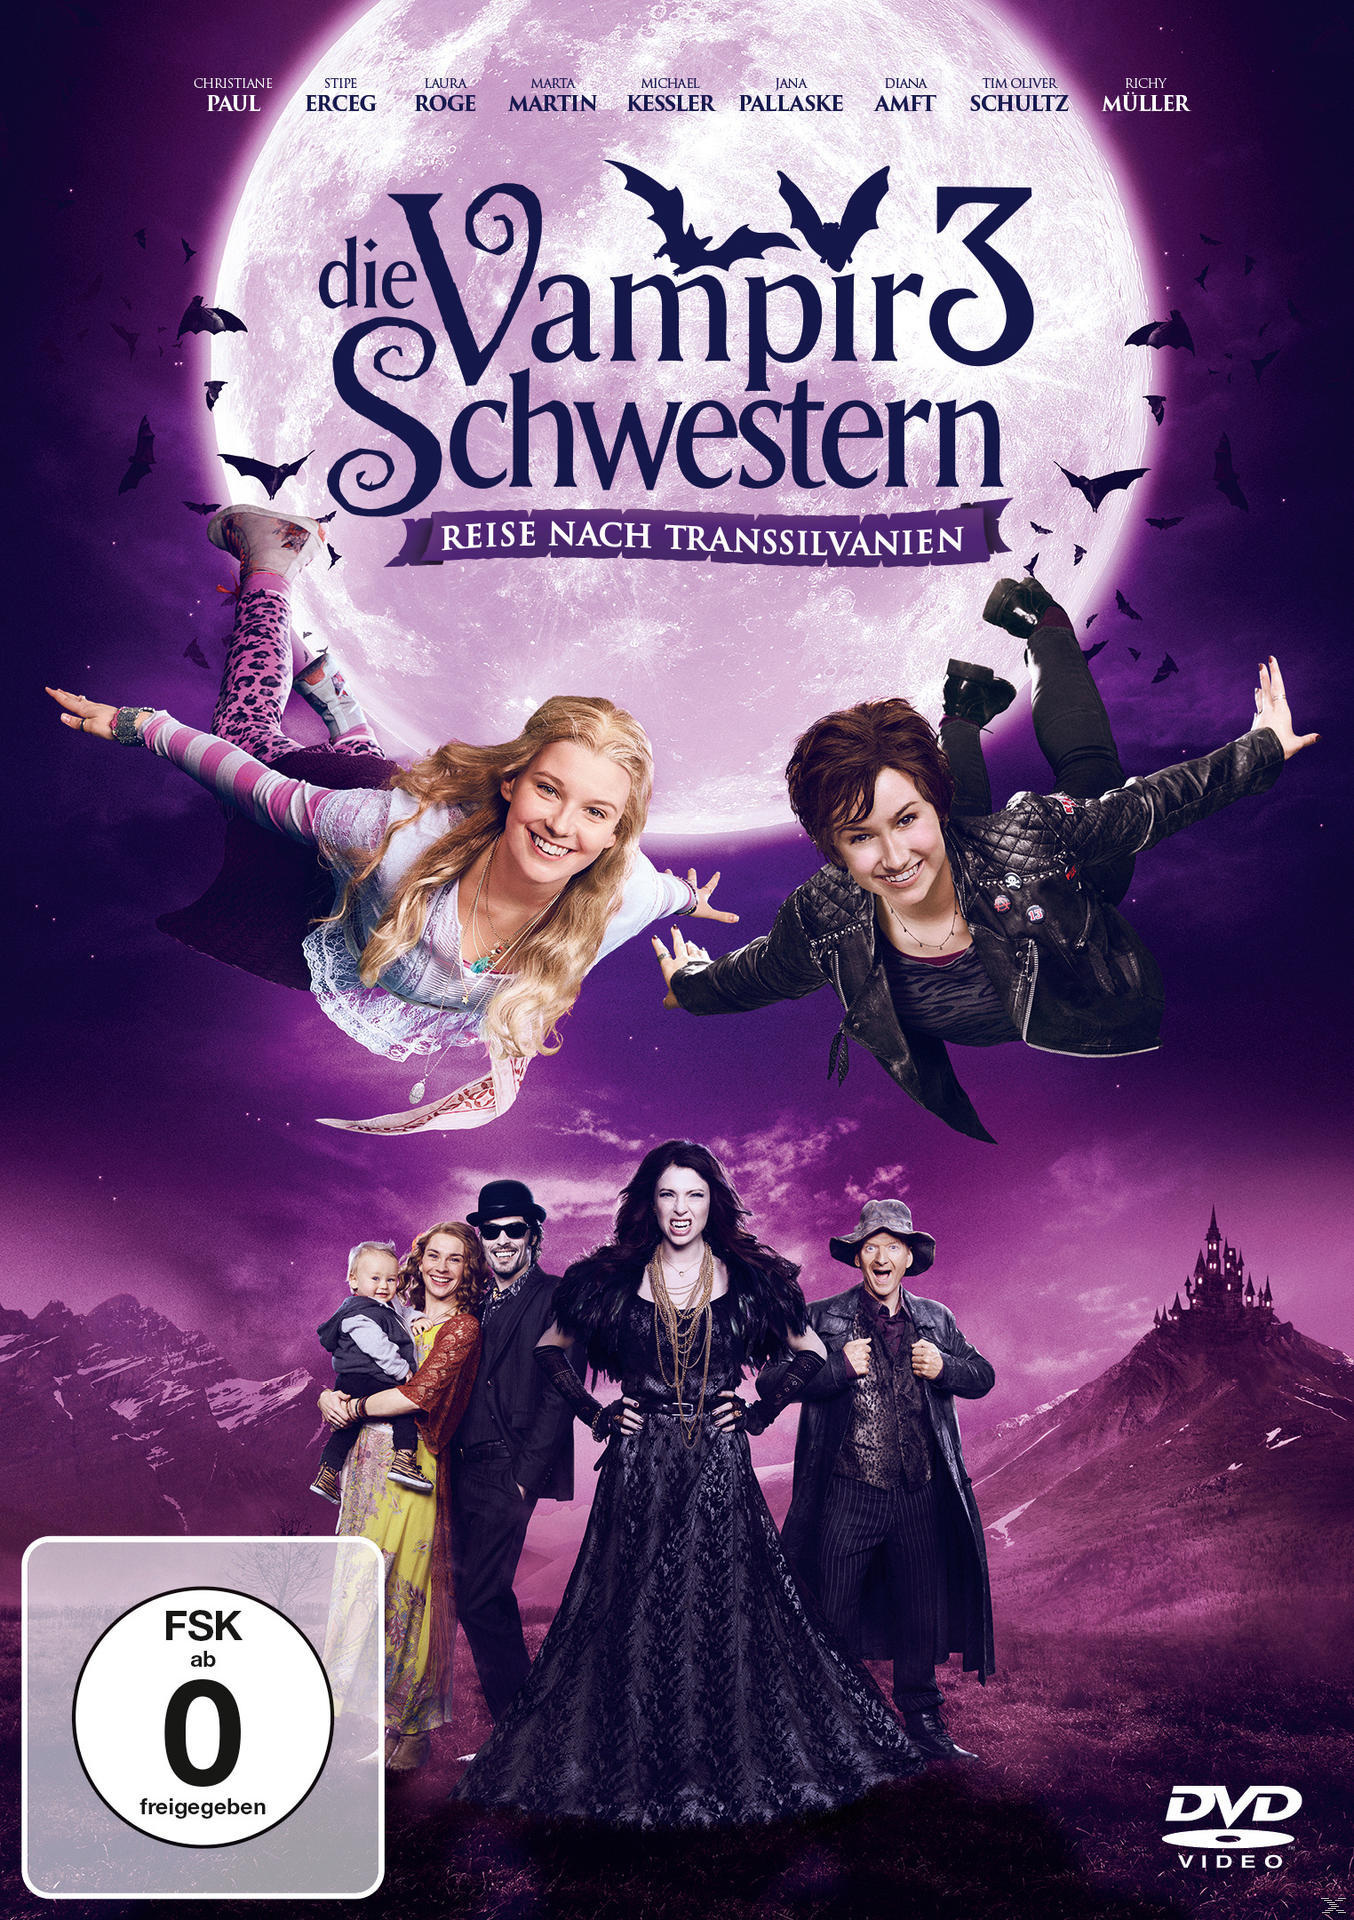 Transsilvanien Reise 3 DVD Vampirschwestern Die nach -